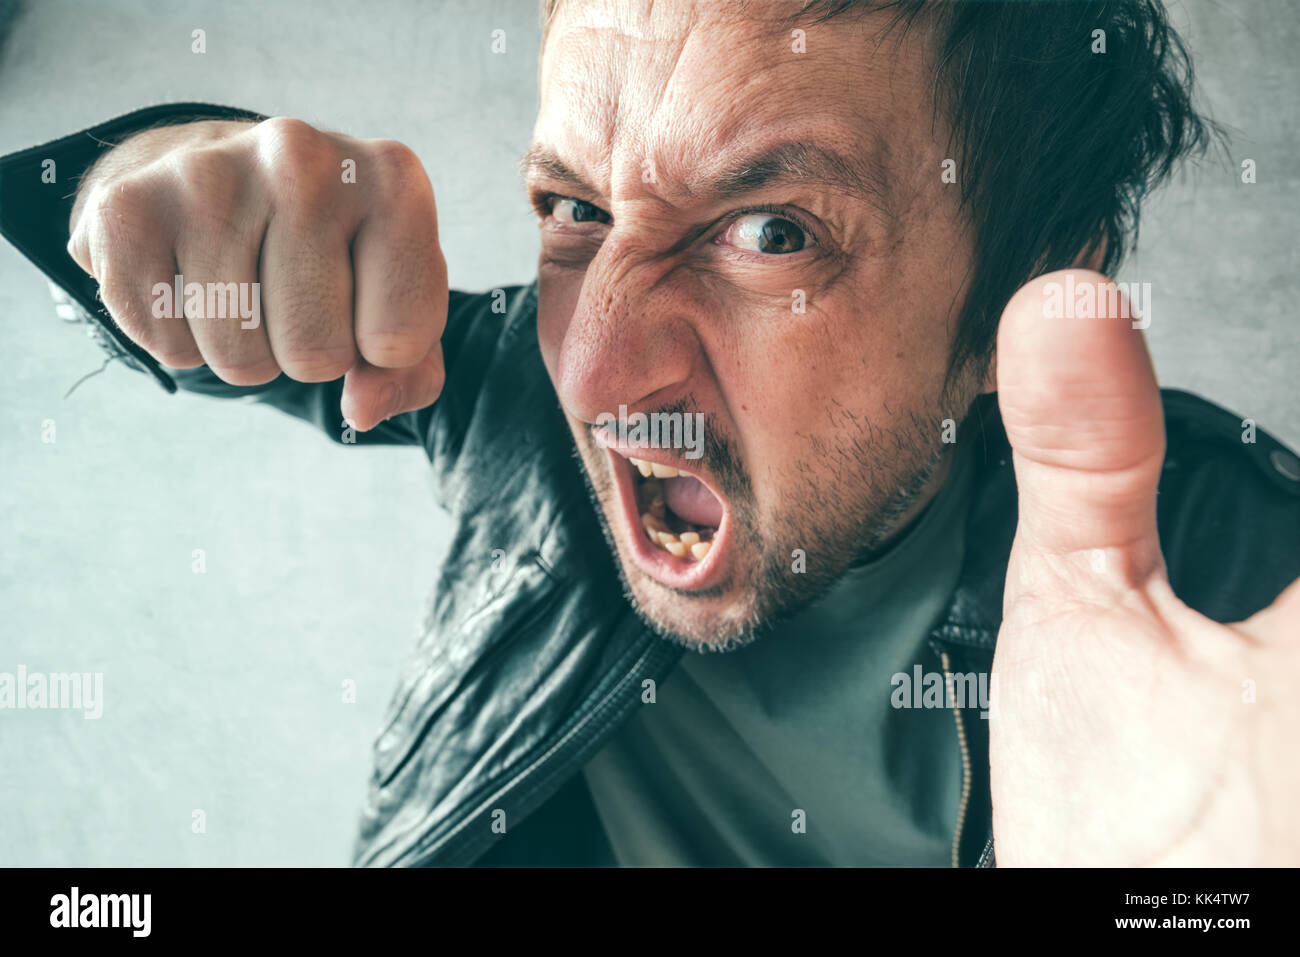 Aggressive mann Stanzen mit Faust während des Kampfes, aus Sicht der Opfer von Gewalt und Kriminalität. Stockfoto